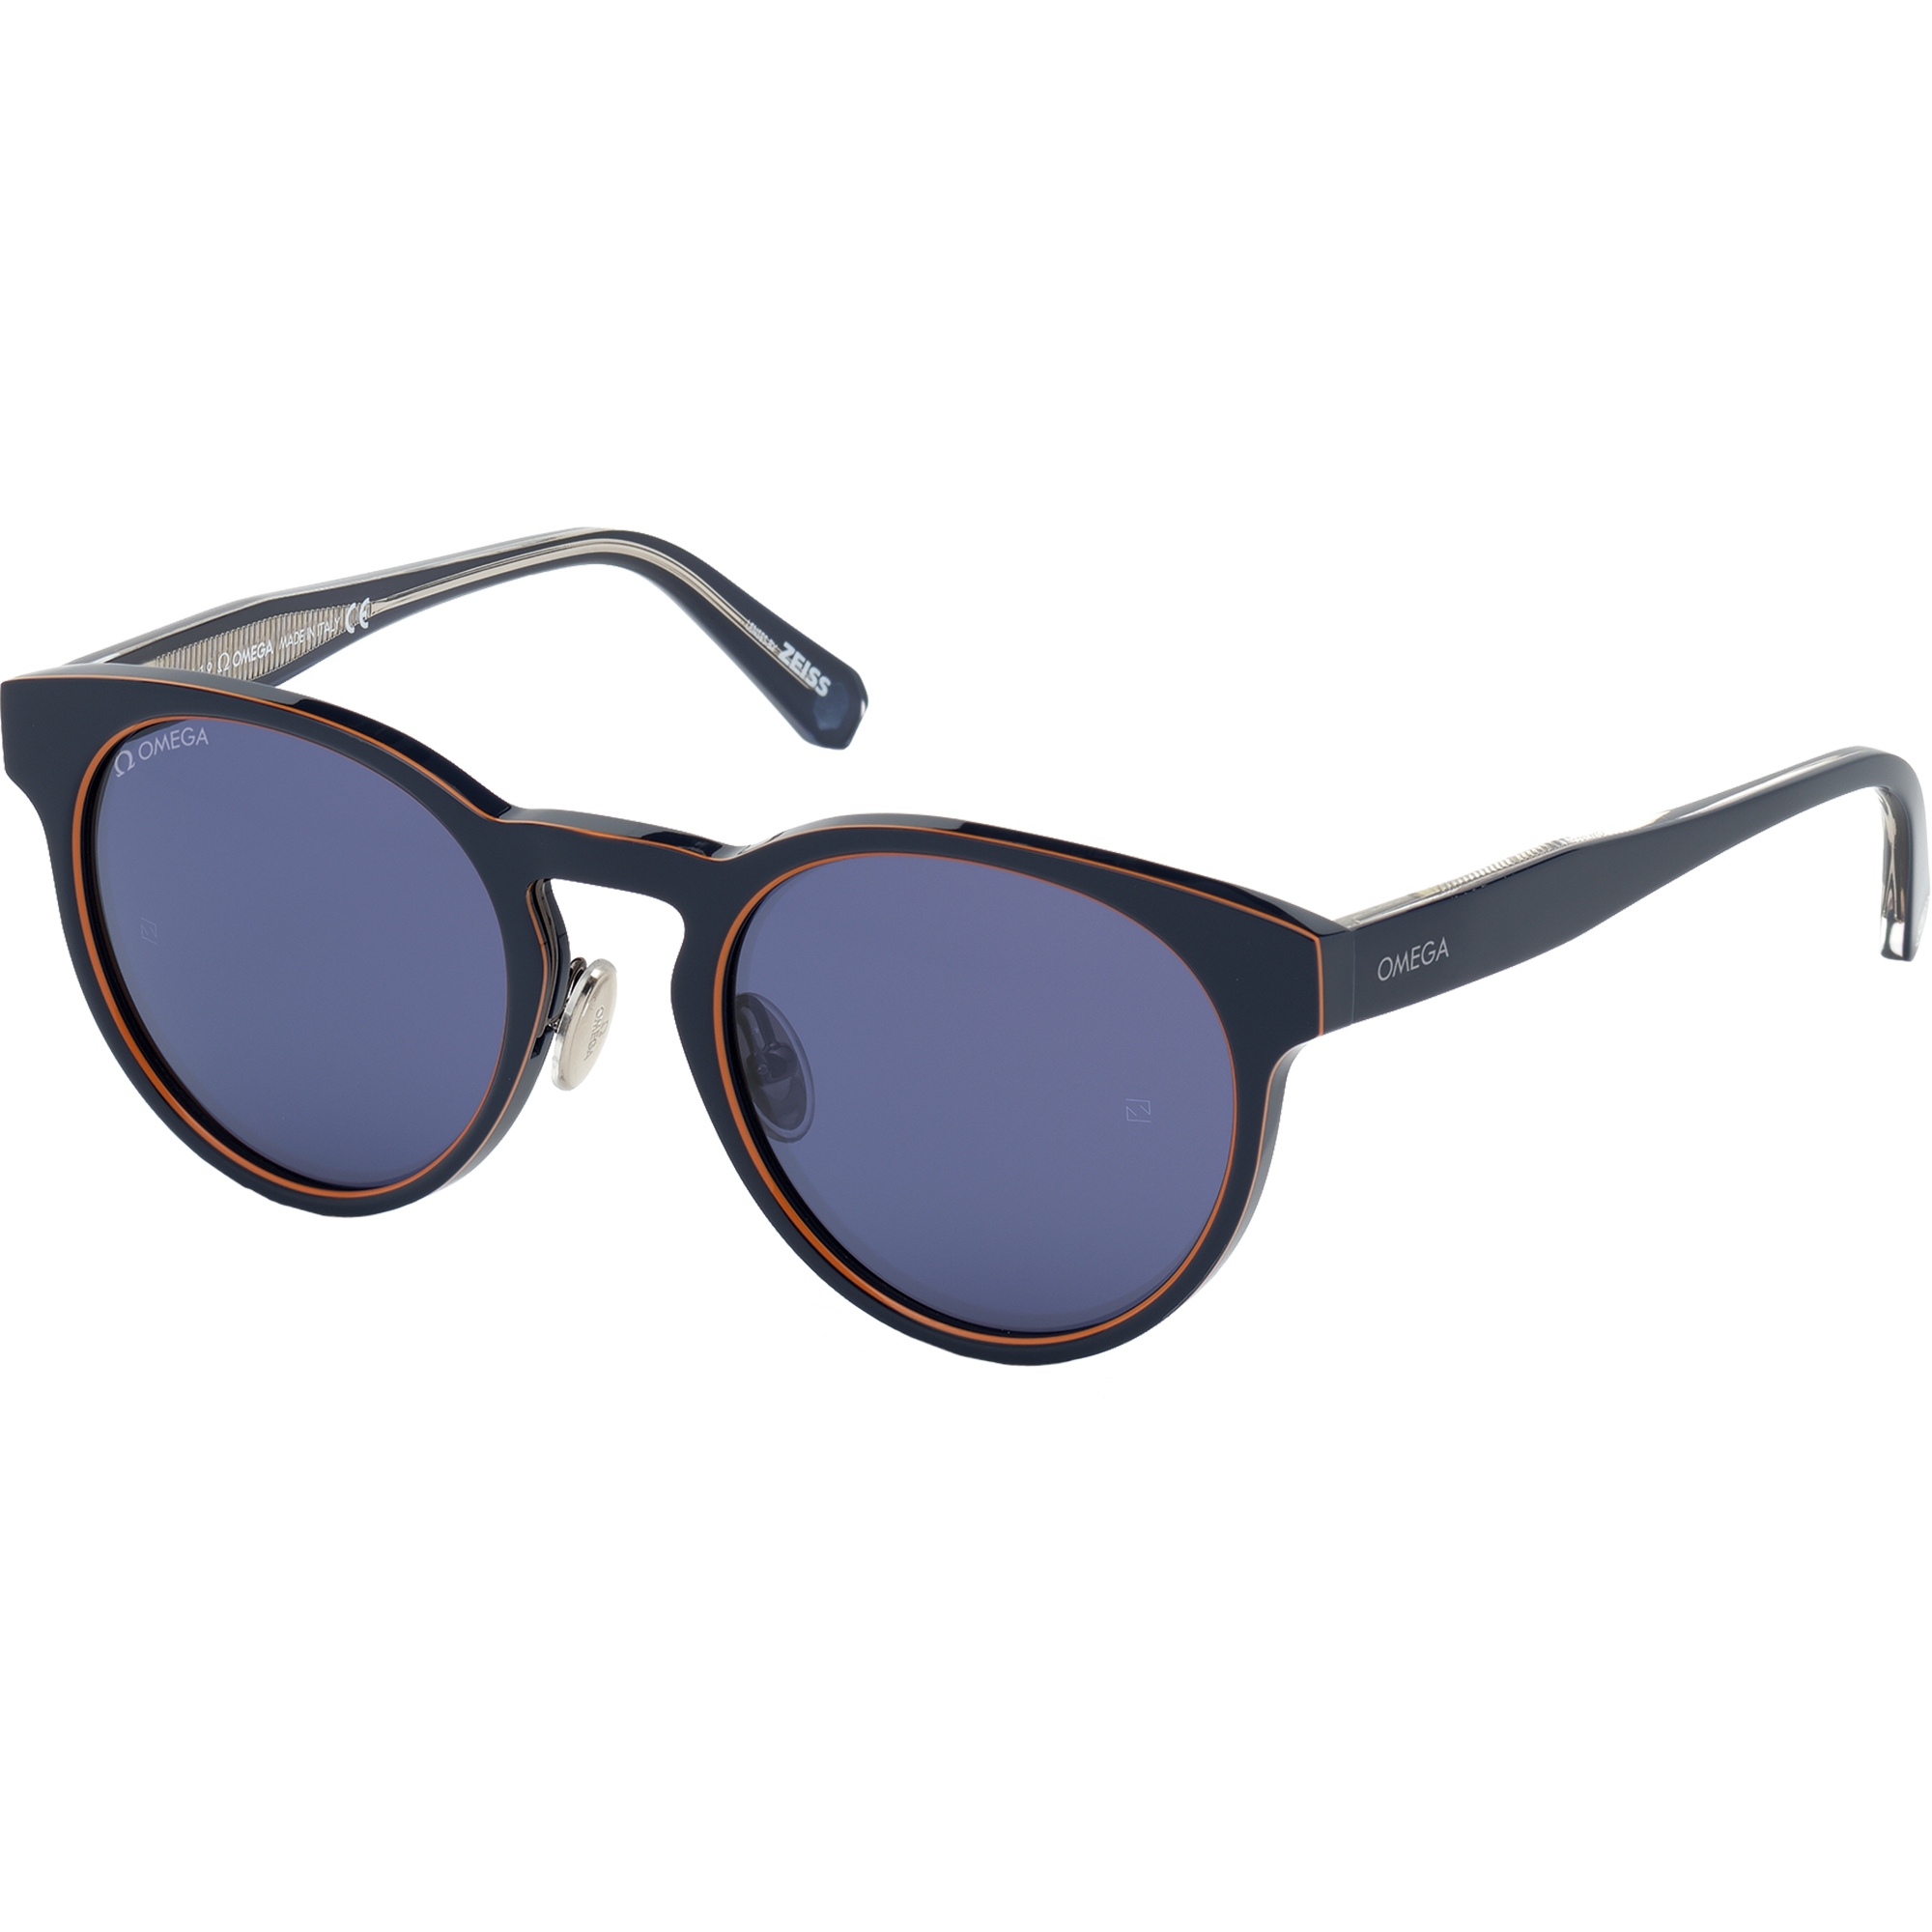 Óculos de Sol - Estilo redondo, Unissexo - OM0020-H5290V